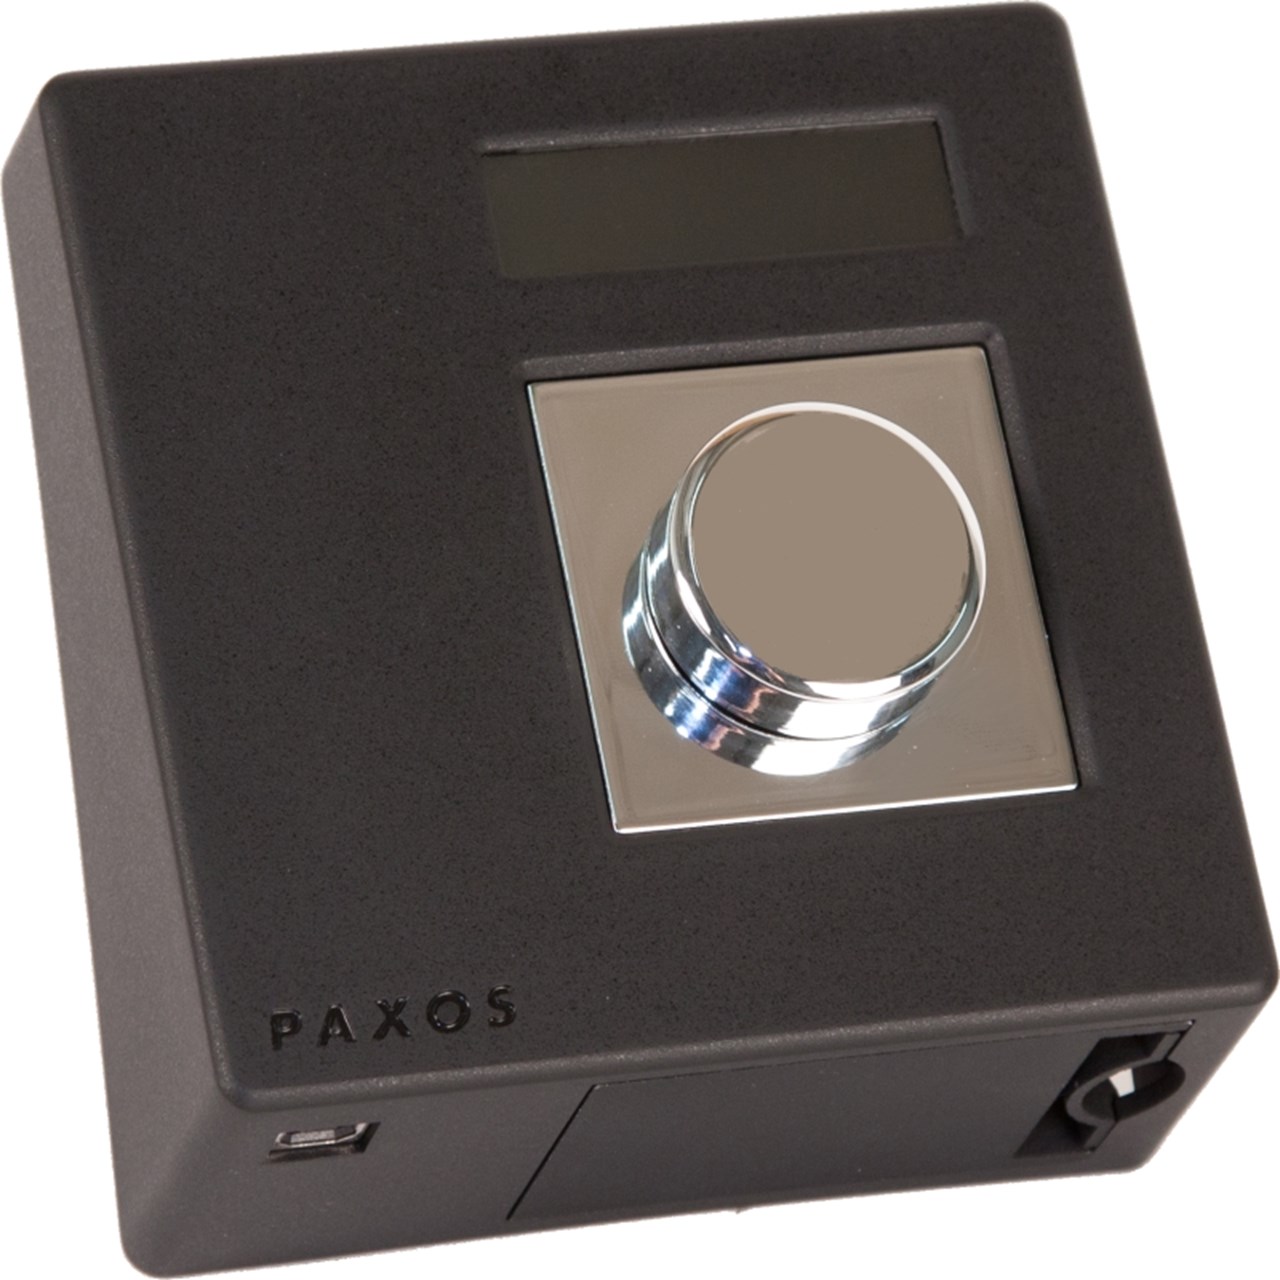 Visokosigurnosni elektronički redundantski sustav Paxos Advance IP - gumb